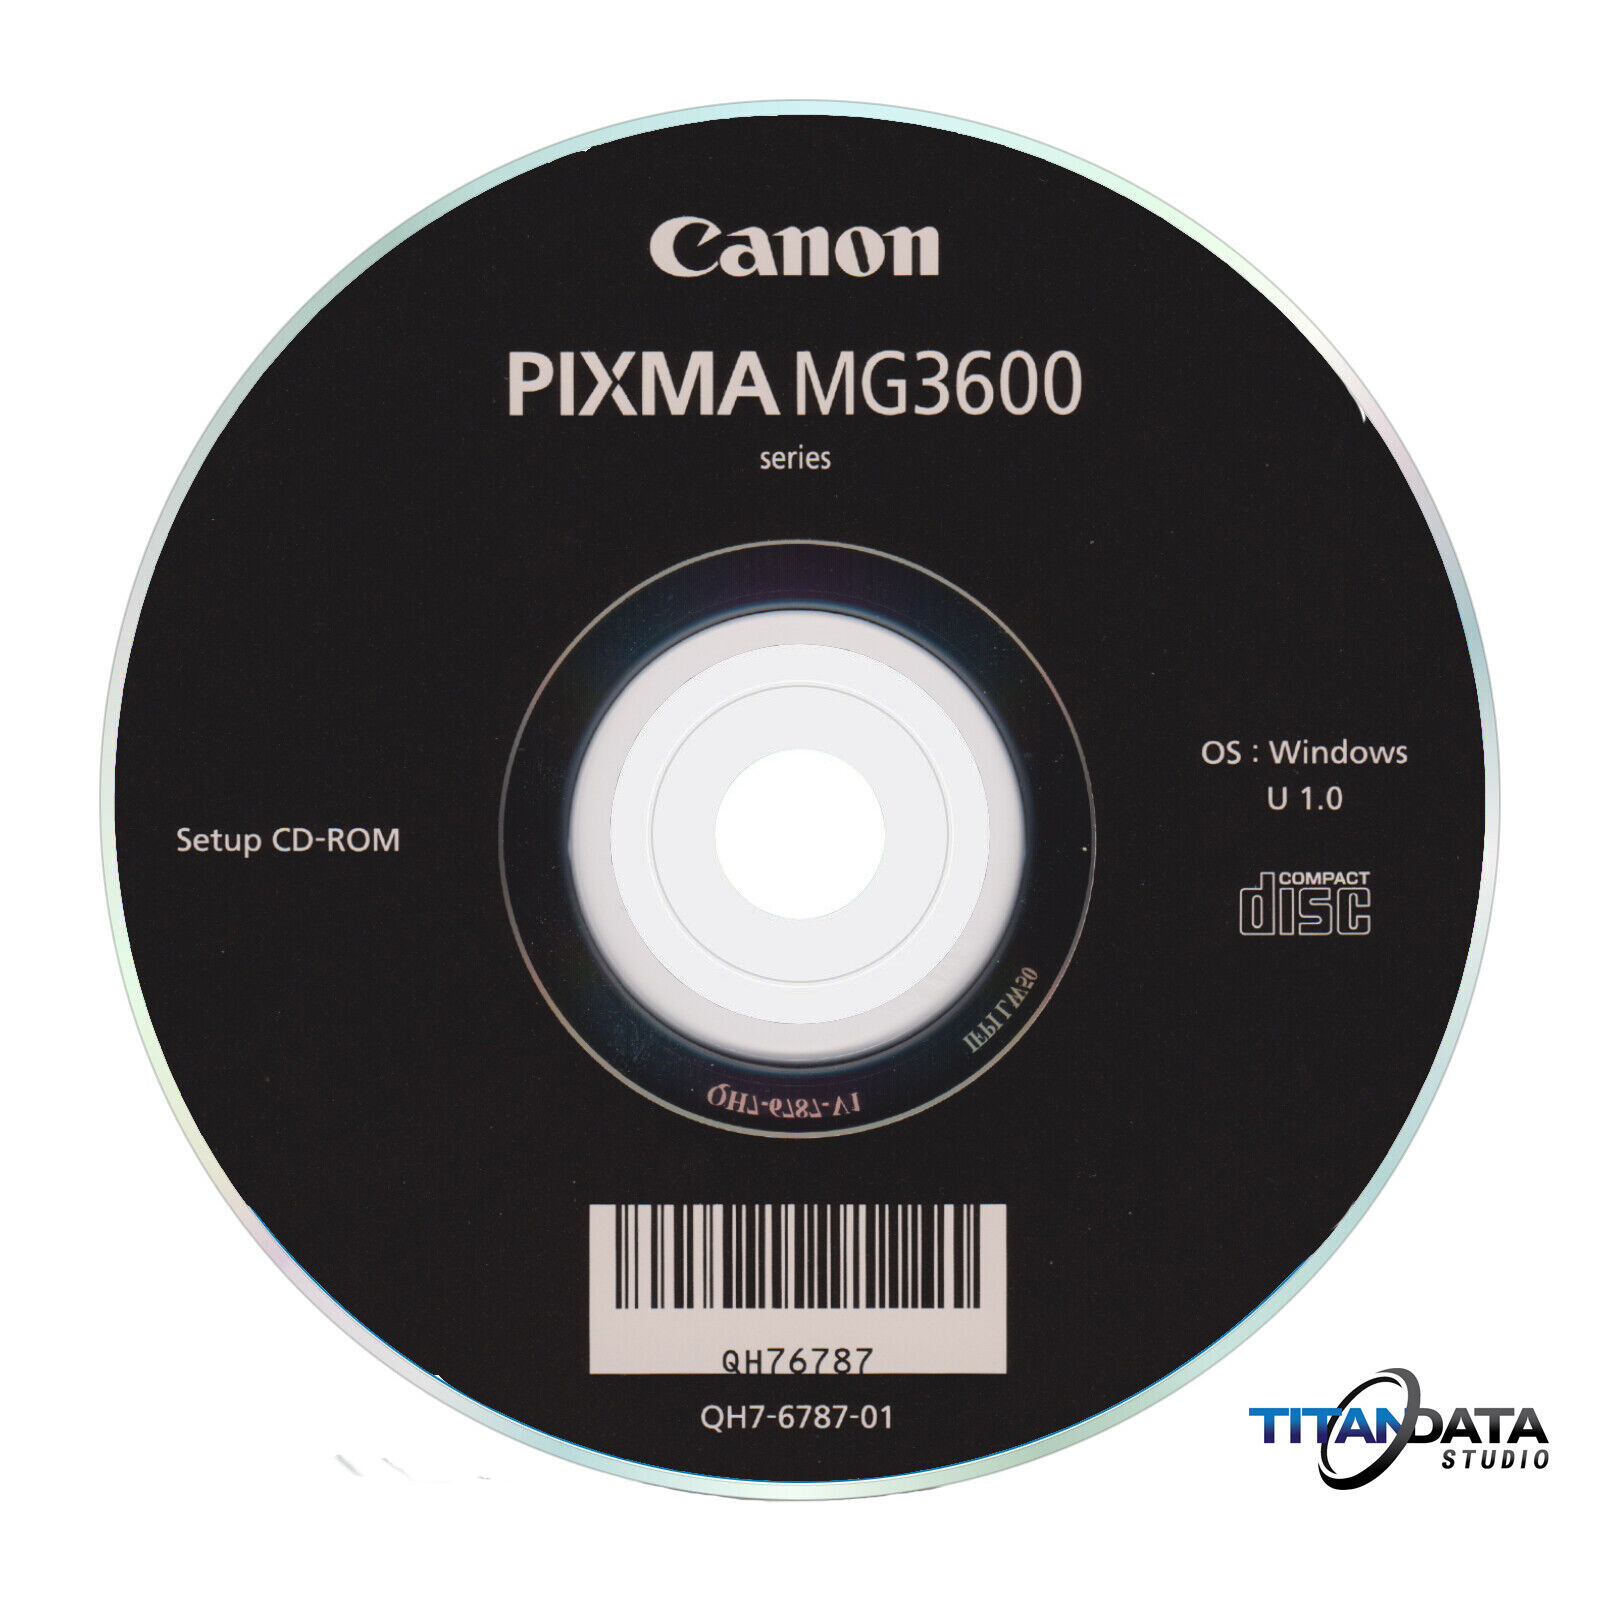 Setup CD ROM for Canon Pixma MG3600 Series Printer Software MG3610 MG3620 MG3640